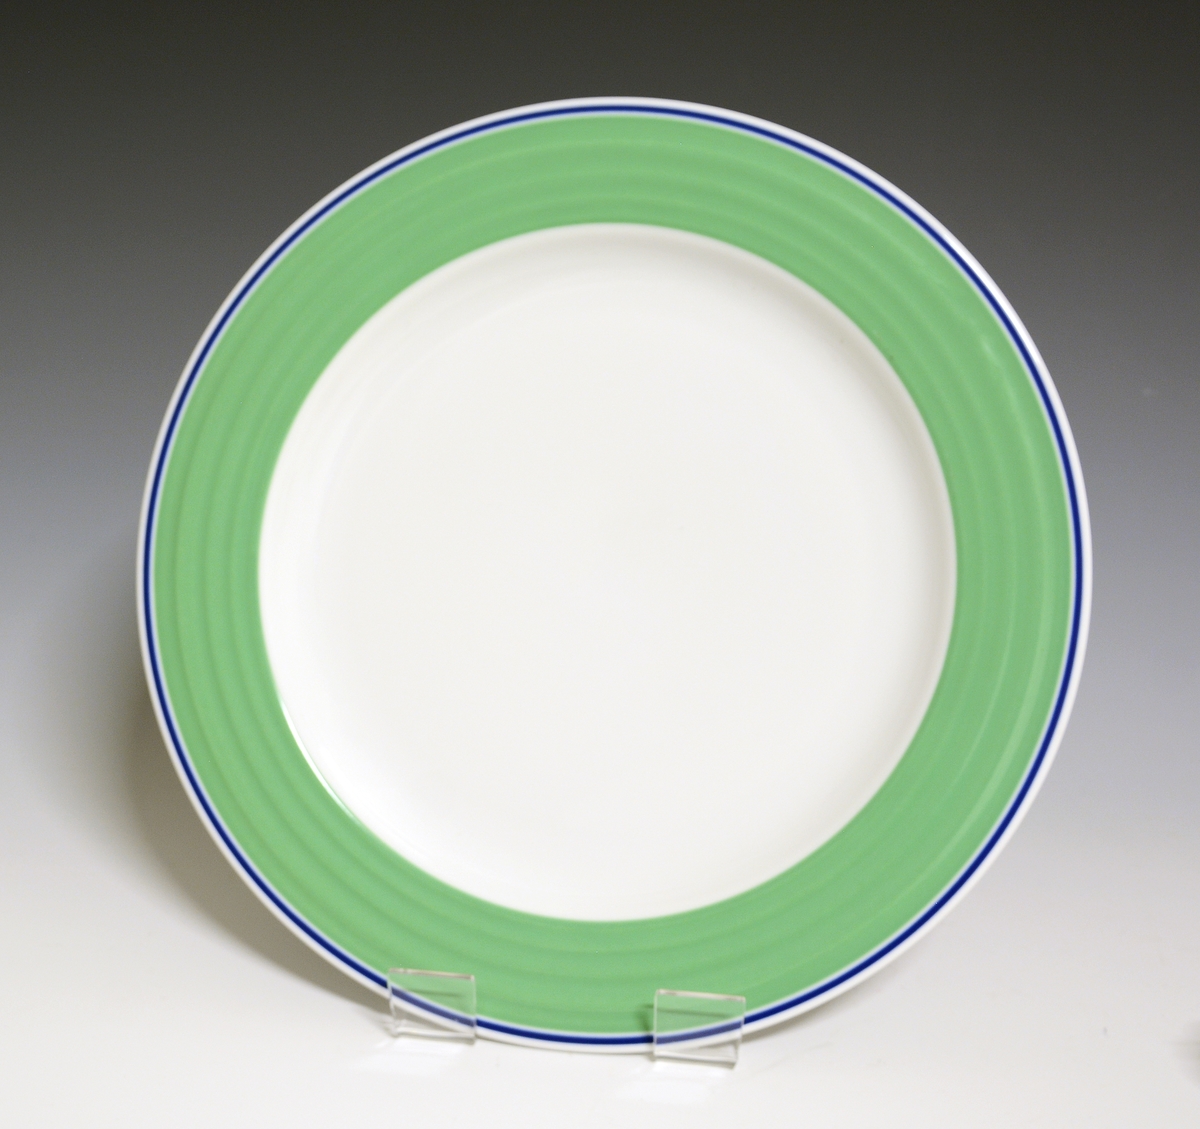 Middagstallerken av porselen med hvit glasur. Fanen dekorert med et grønt bånd med blå stripe ut mot kanten. I fanens gods riller. 
Modell: Saturn
Dekor: Saturn Grønn